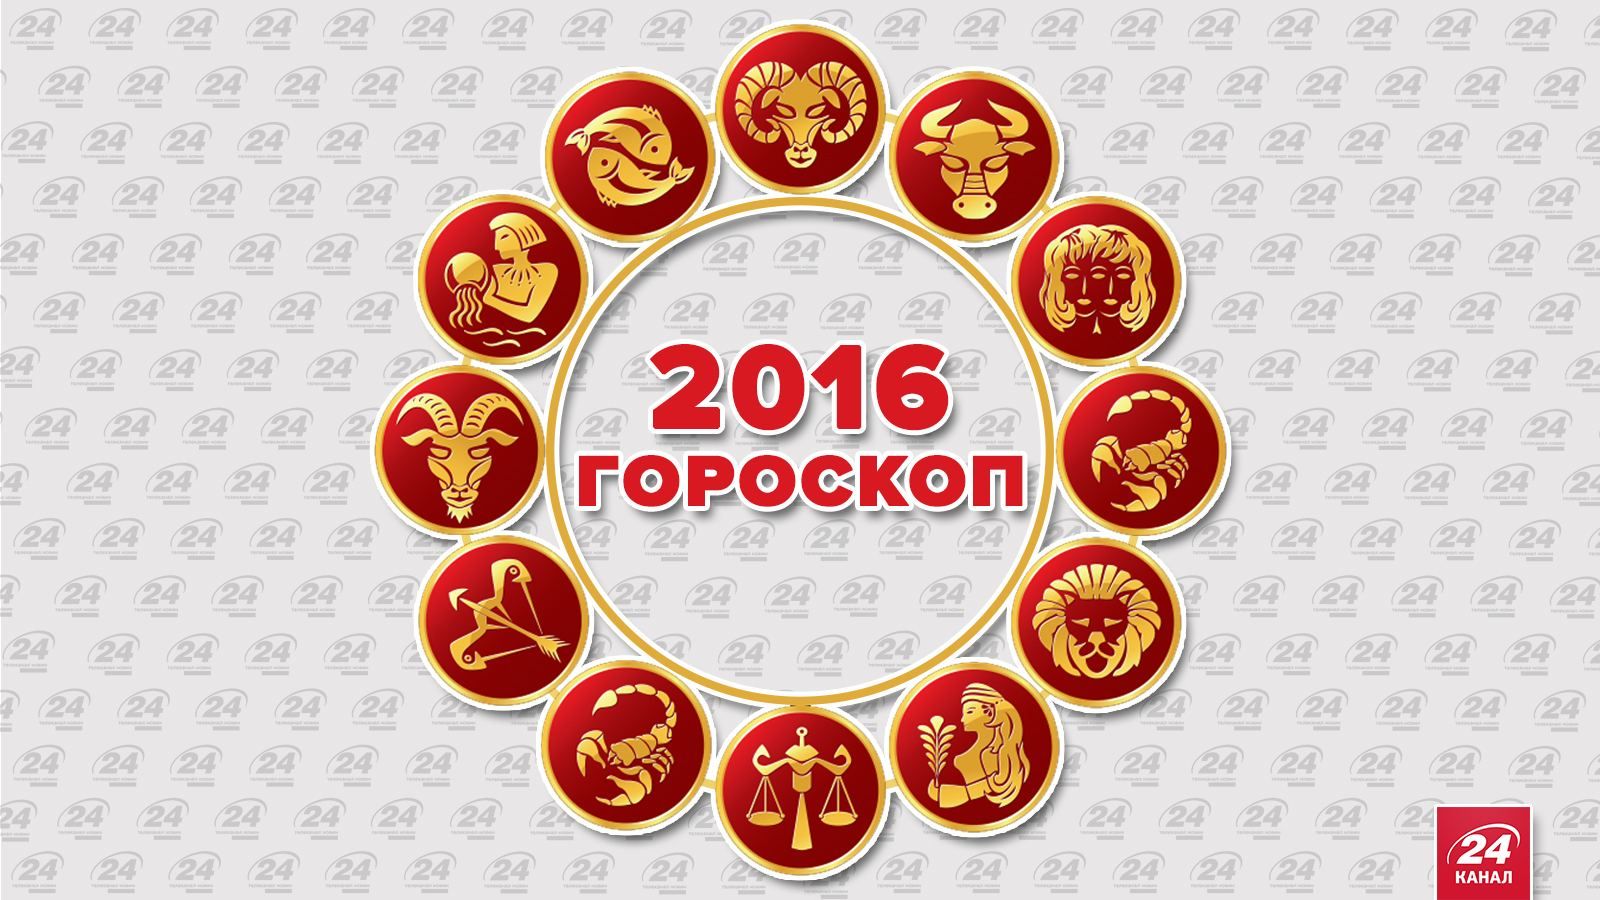 Політичний гороскоп на 2016 рік: що чекає на українців